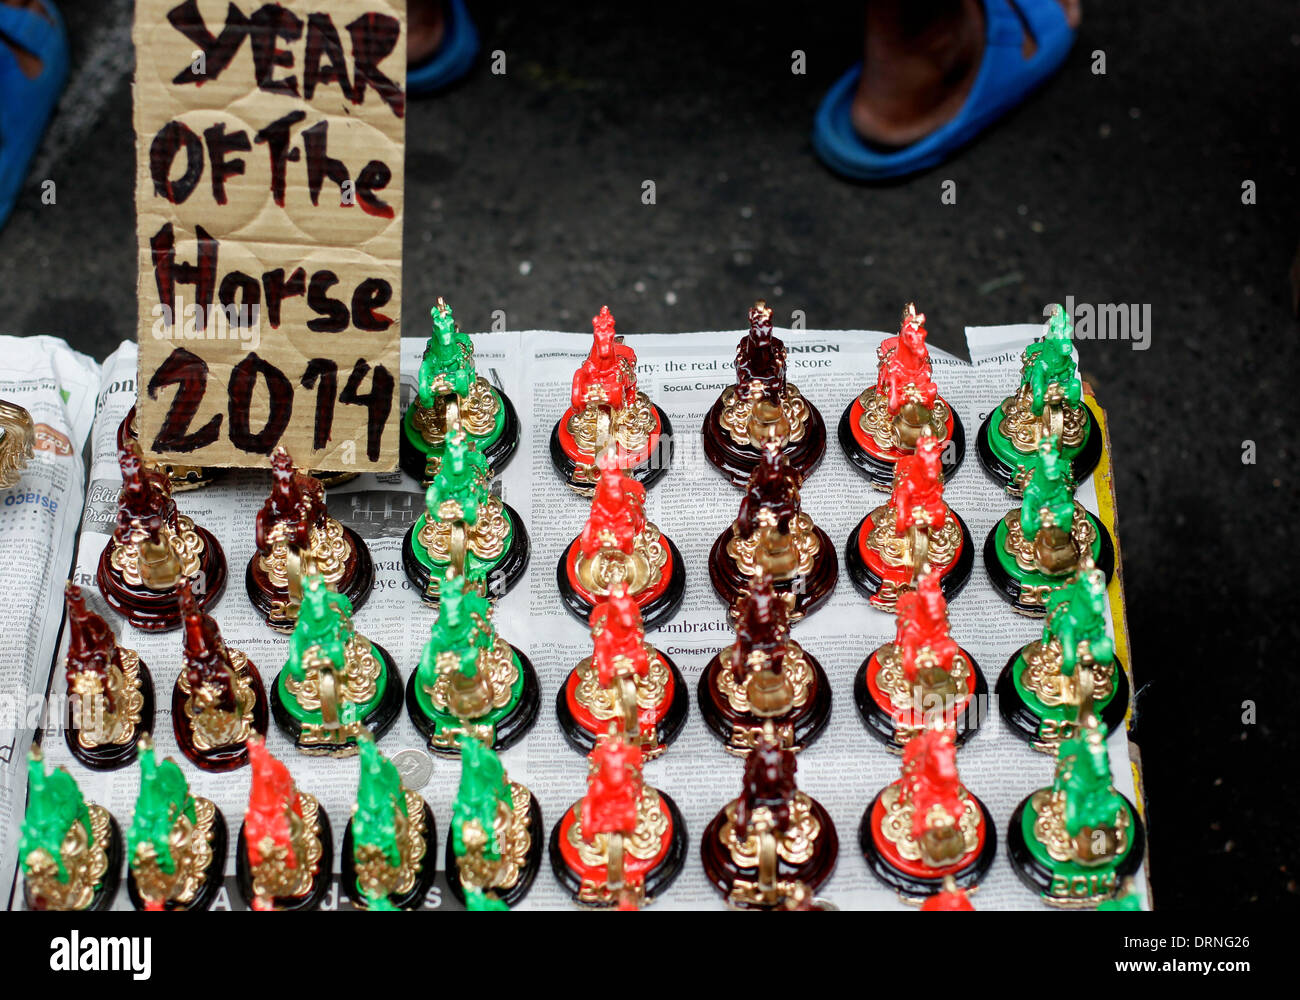 Manila, Filipinas. 30 de enero de 2014. Amuletos de la suerte en forma de caballos se venden en las calles de Manila en Chinatown, un día antes de la celebración del Año Nuevo Chino, el Año del Caballo el 30 de enero de 2014. Fotografía por Mark Cristino/Alamy Live News Foto de stock